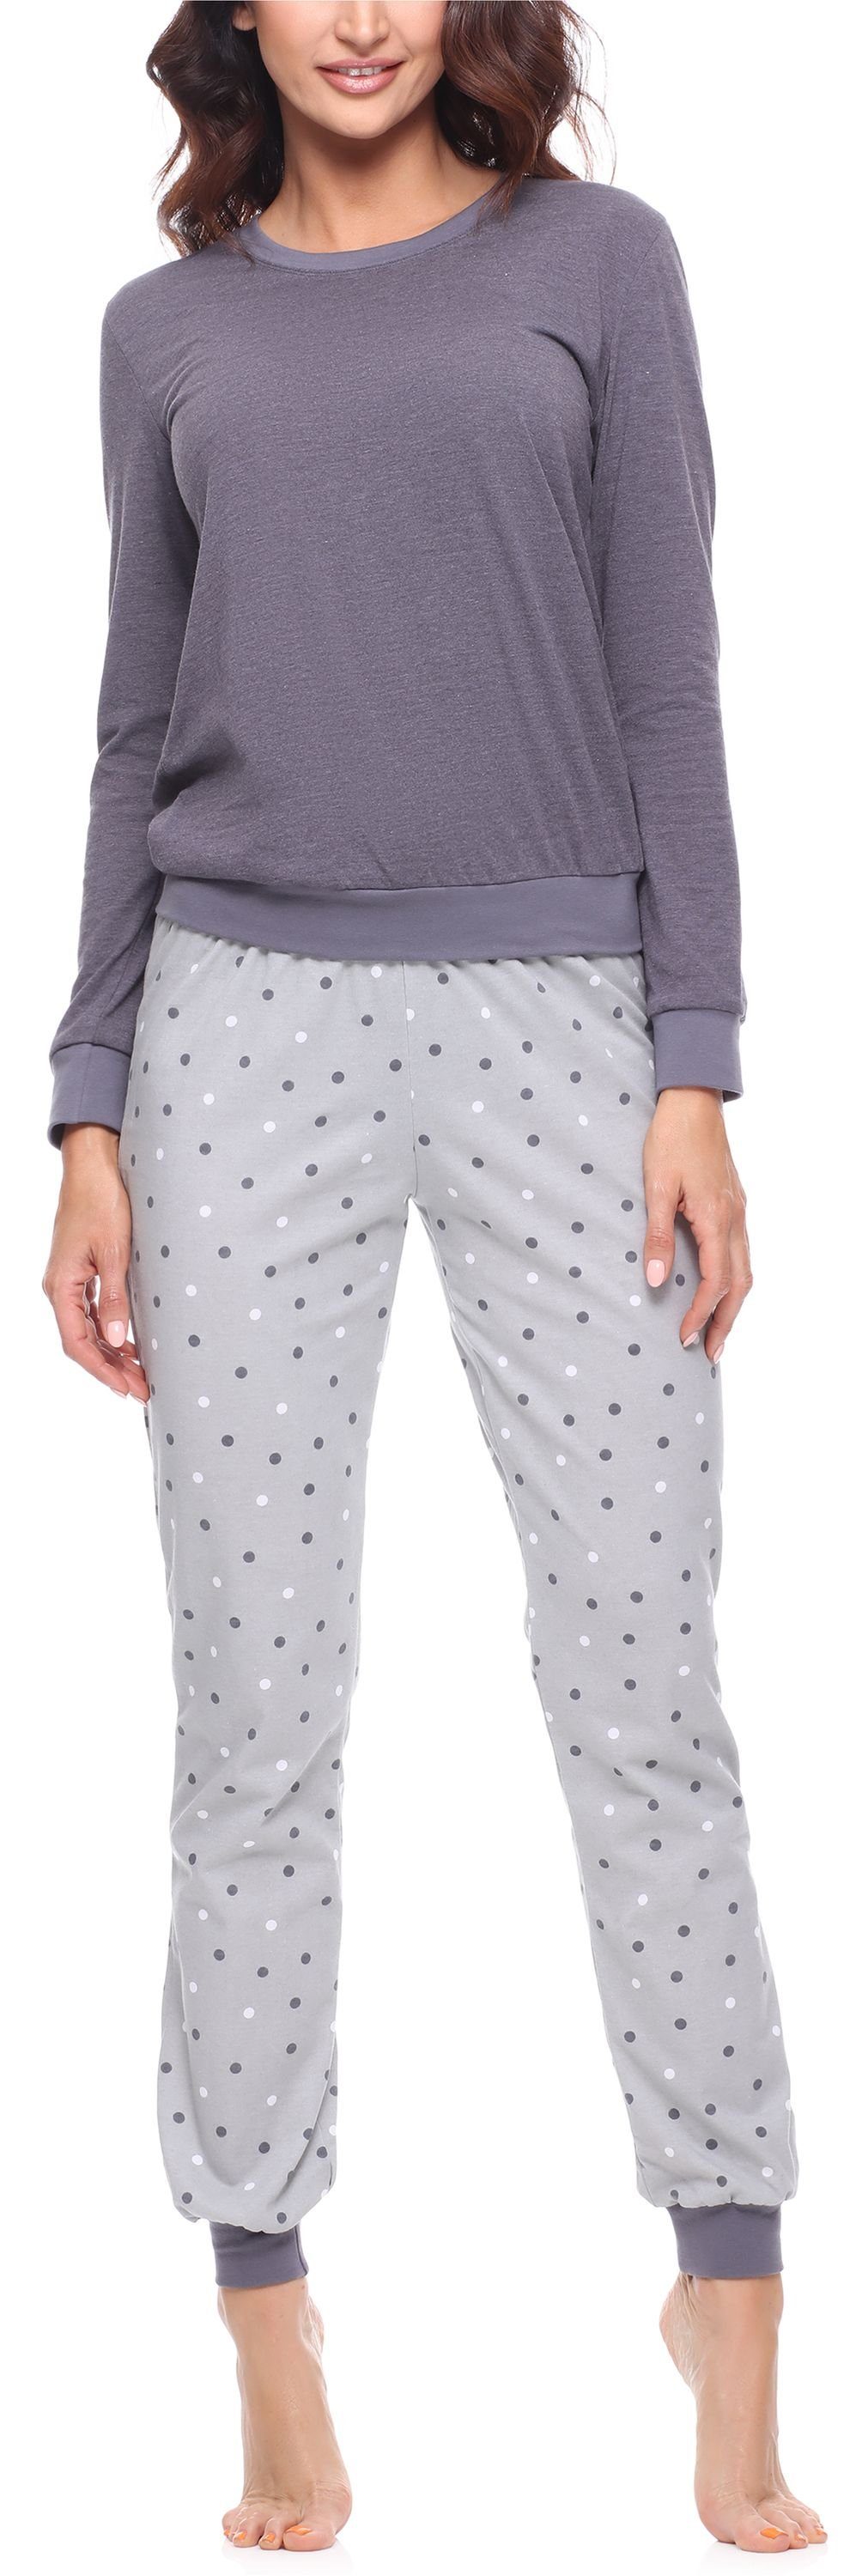 Merry Style Schlafanzug Damen Schlafanzug Zweiteiler Pyjama lang bunt mit Muster MS10-268 Dunkelmelange/Grau